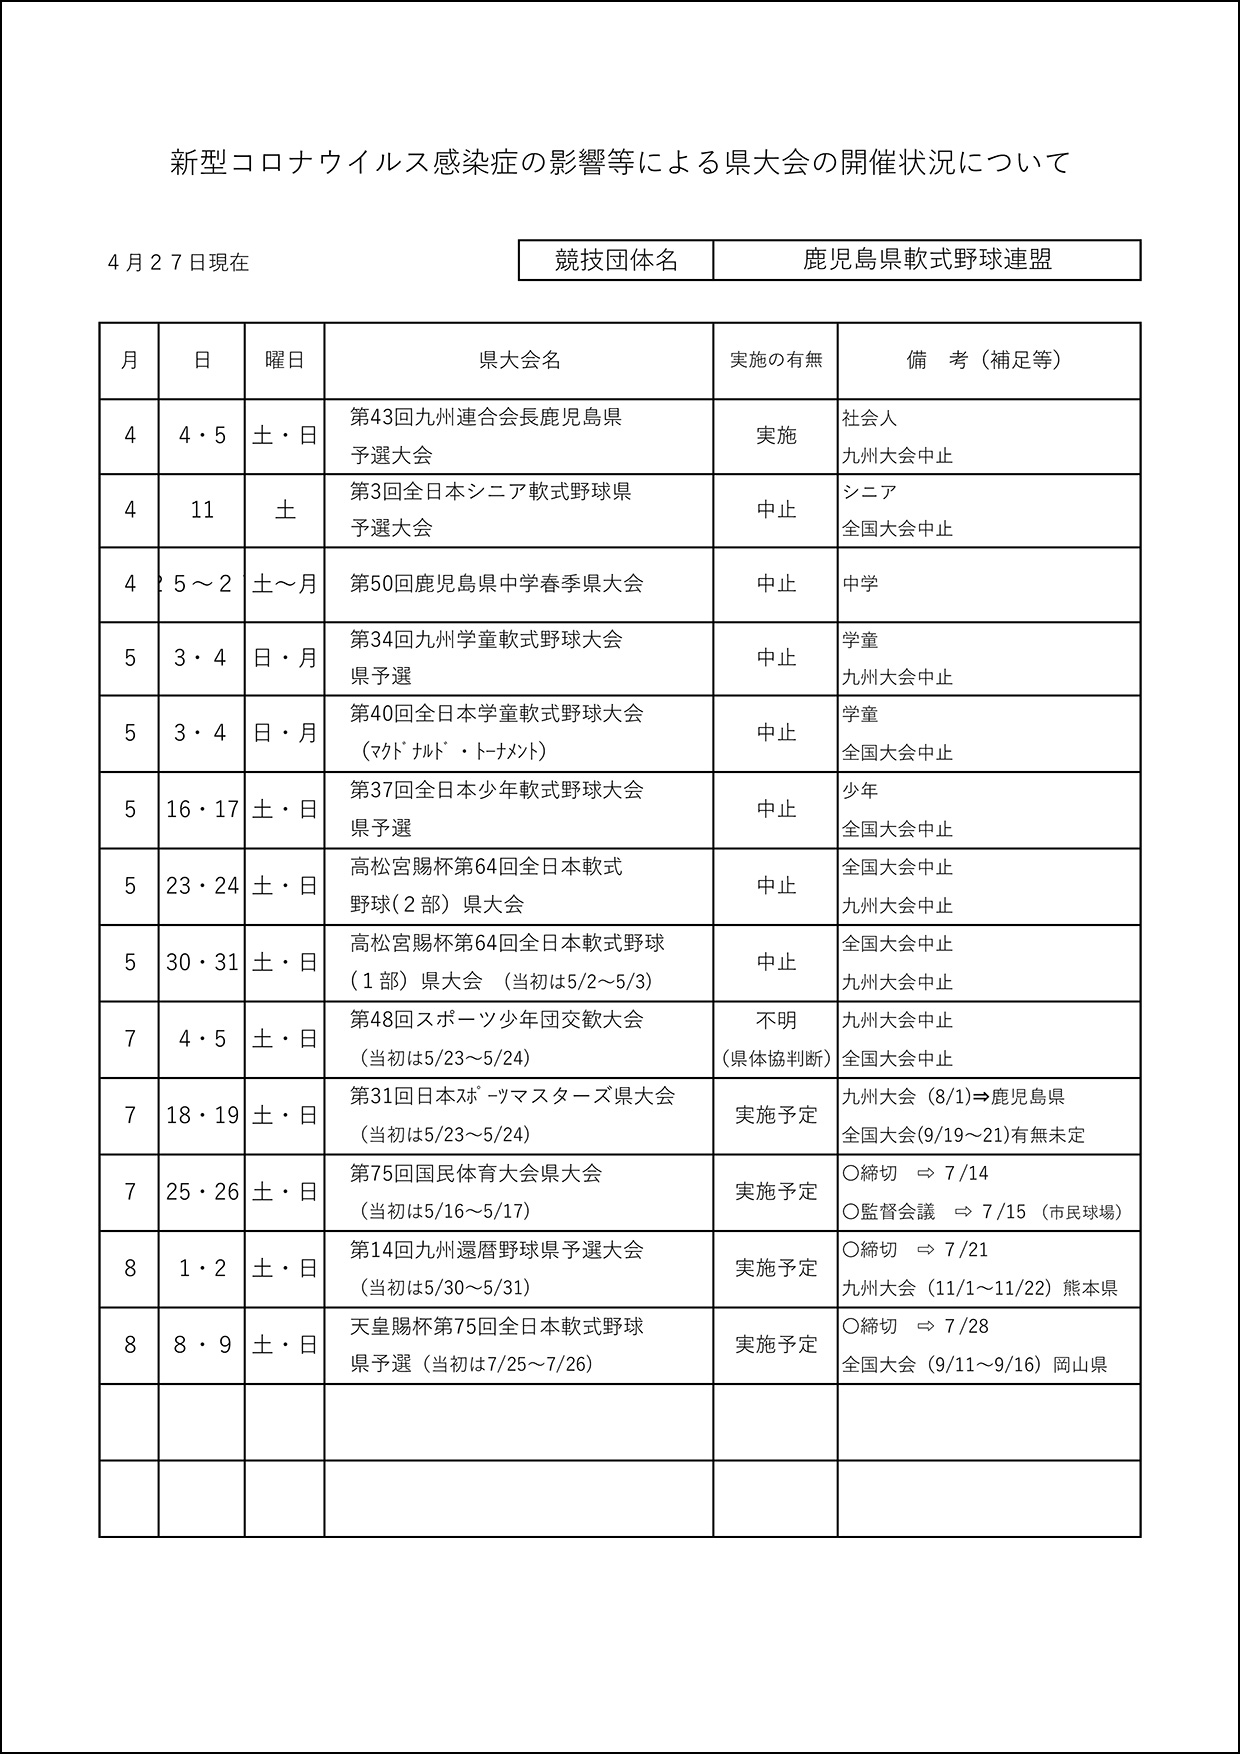 【通知】高松宮賜杯第64回全日本軟式野球1・2部大会の中止について